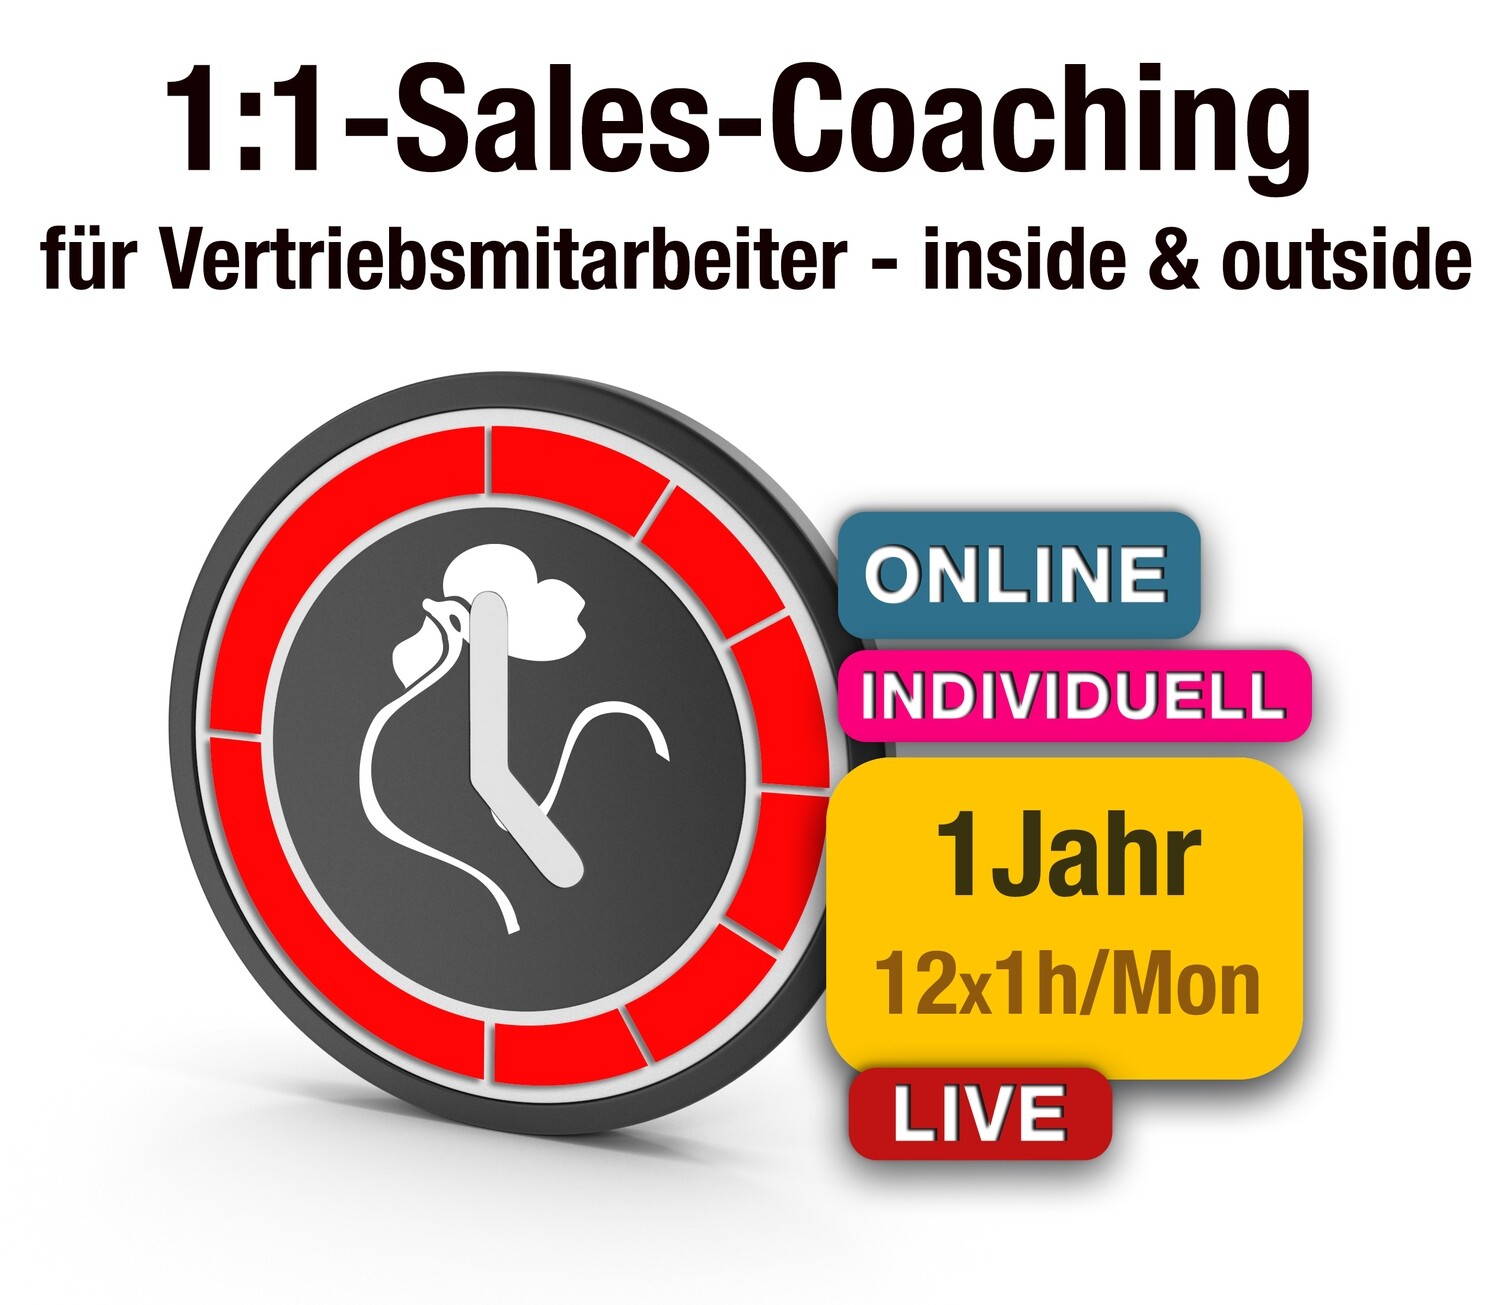 1:1-Sales-Coaching für Vertriebsmitarbeiter - inside und outside